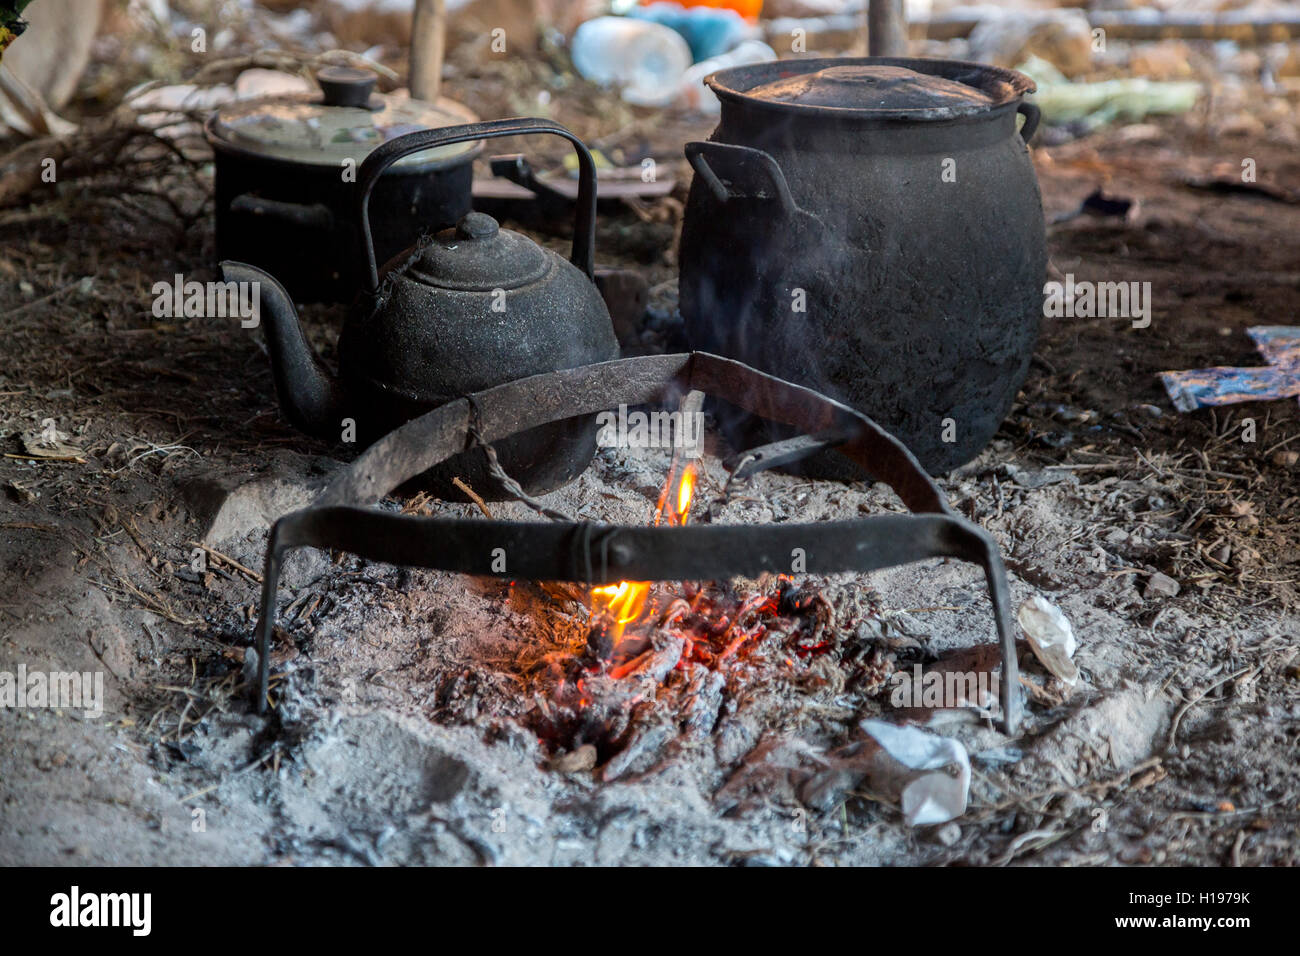 Gorges de Todra, le Maroc. Le feu pour le chauffage de l'eau pour le thé, tente berbère Amazigh. Banque D'Images